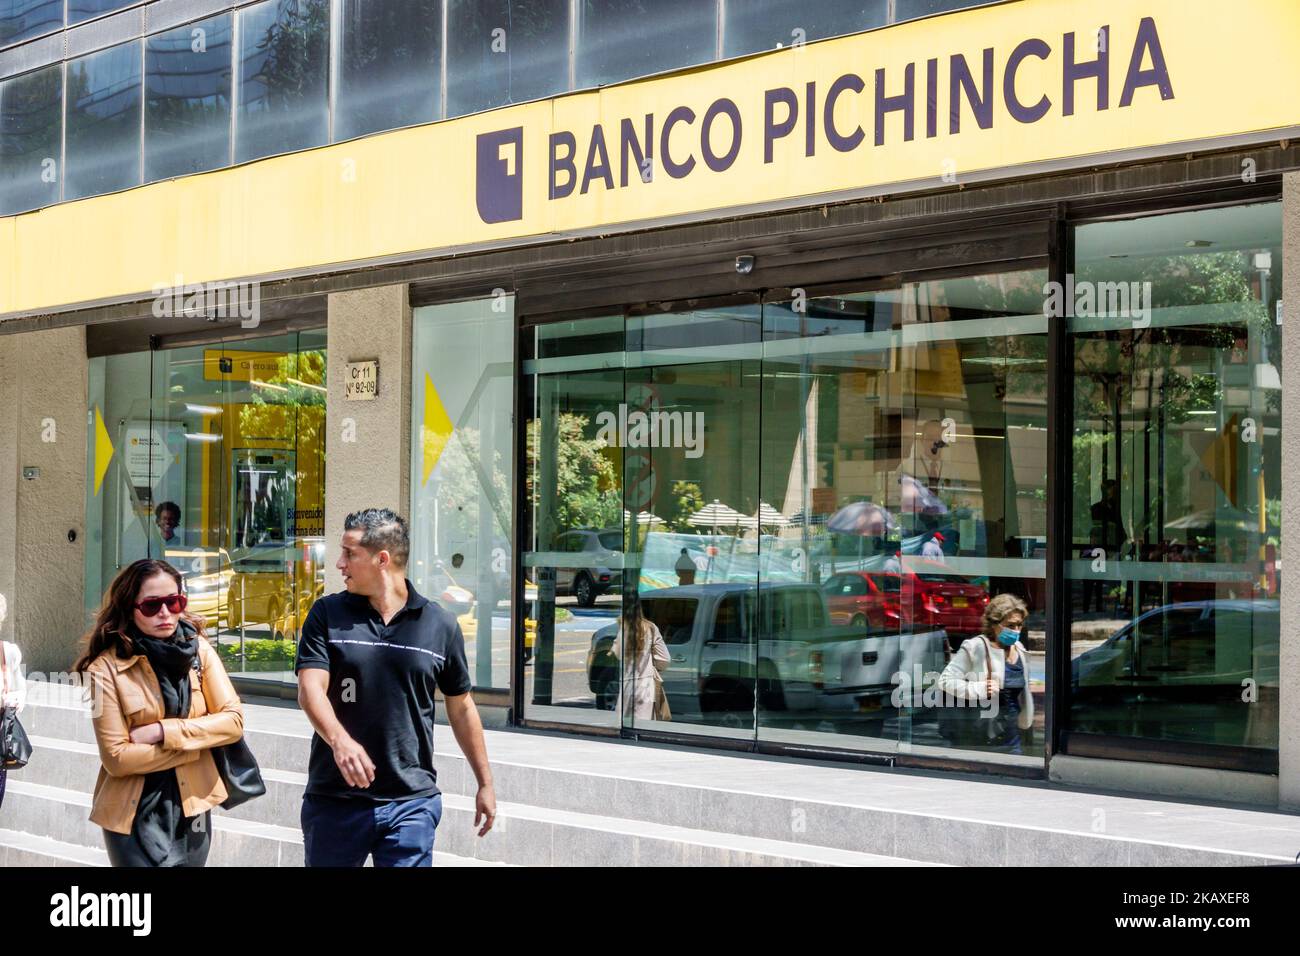 Bogota Colombia,El Chico Carrera 11,uomo uomini maschio donna donna donna femmina coppie coppia Banco Pichincha banca banking,esterno ingresso anteriore,pedest Foto Stock